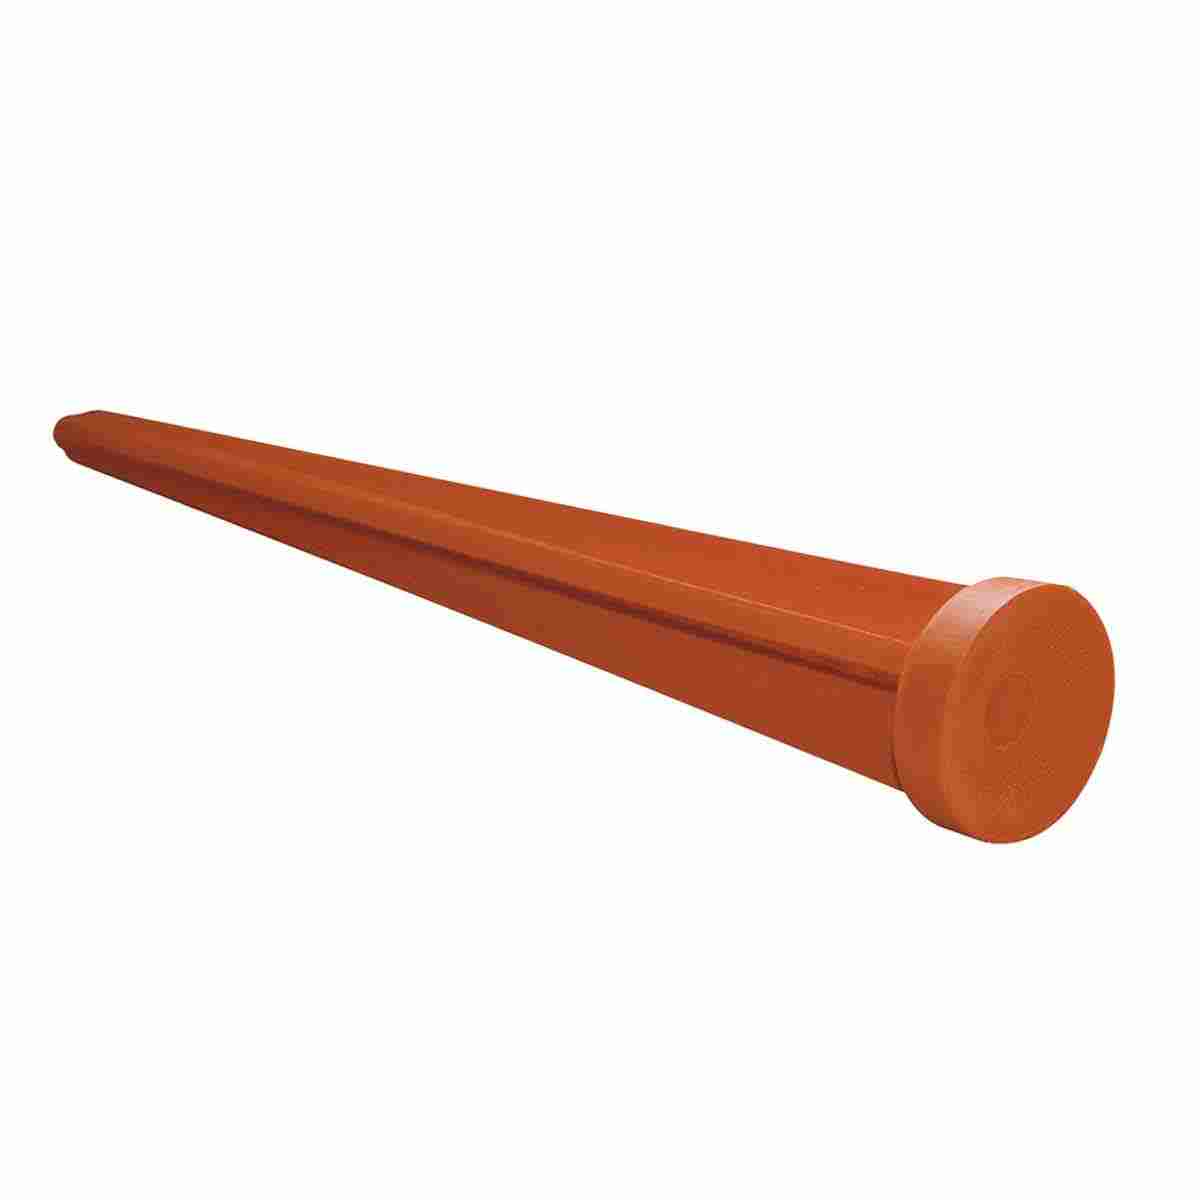 Plastikkegel, Länge: 200 mm, ohne Rand, orange, Aufschrift: Verm. Punkt